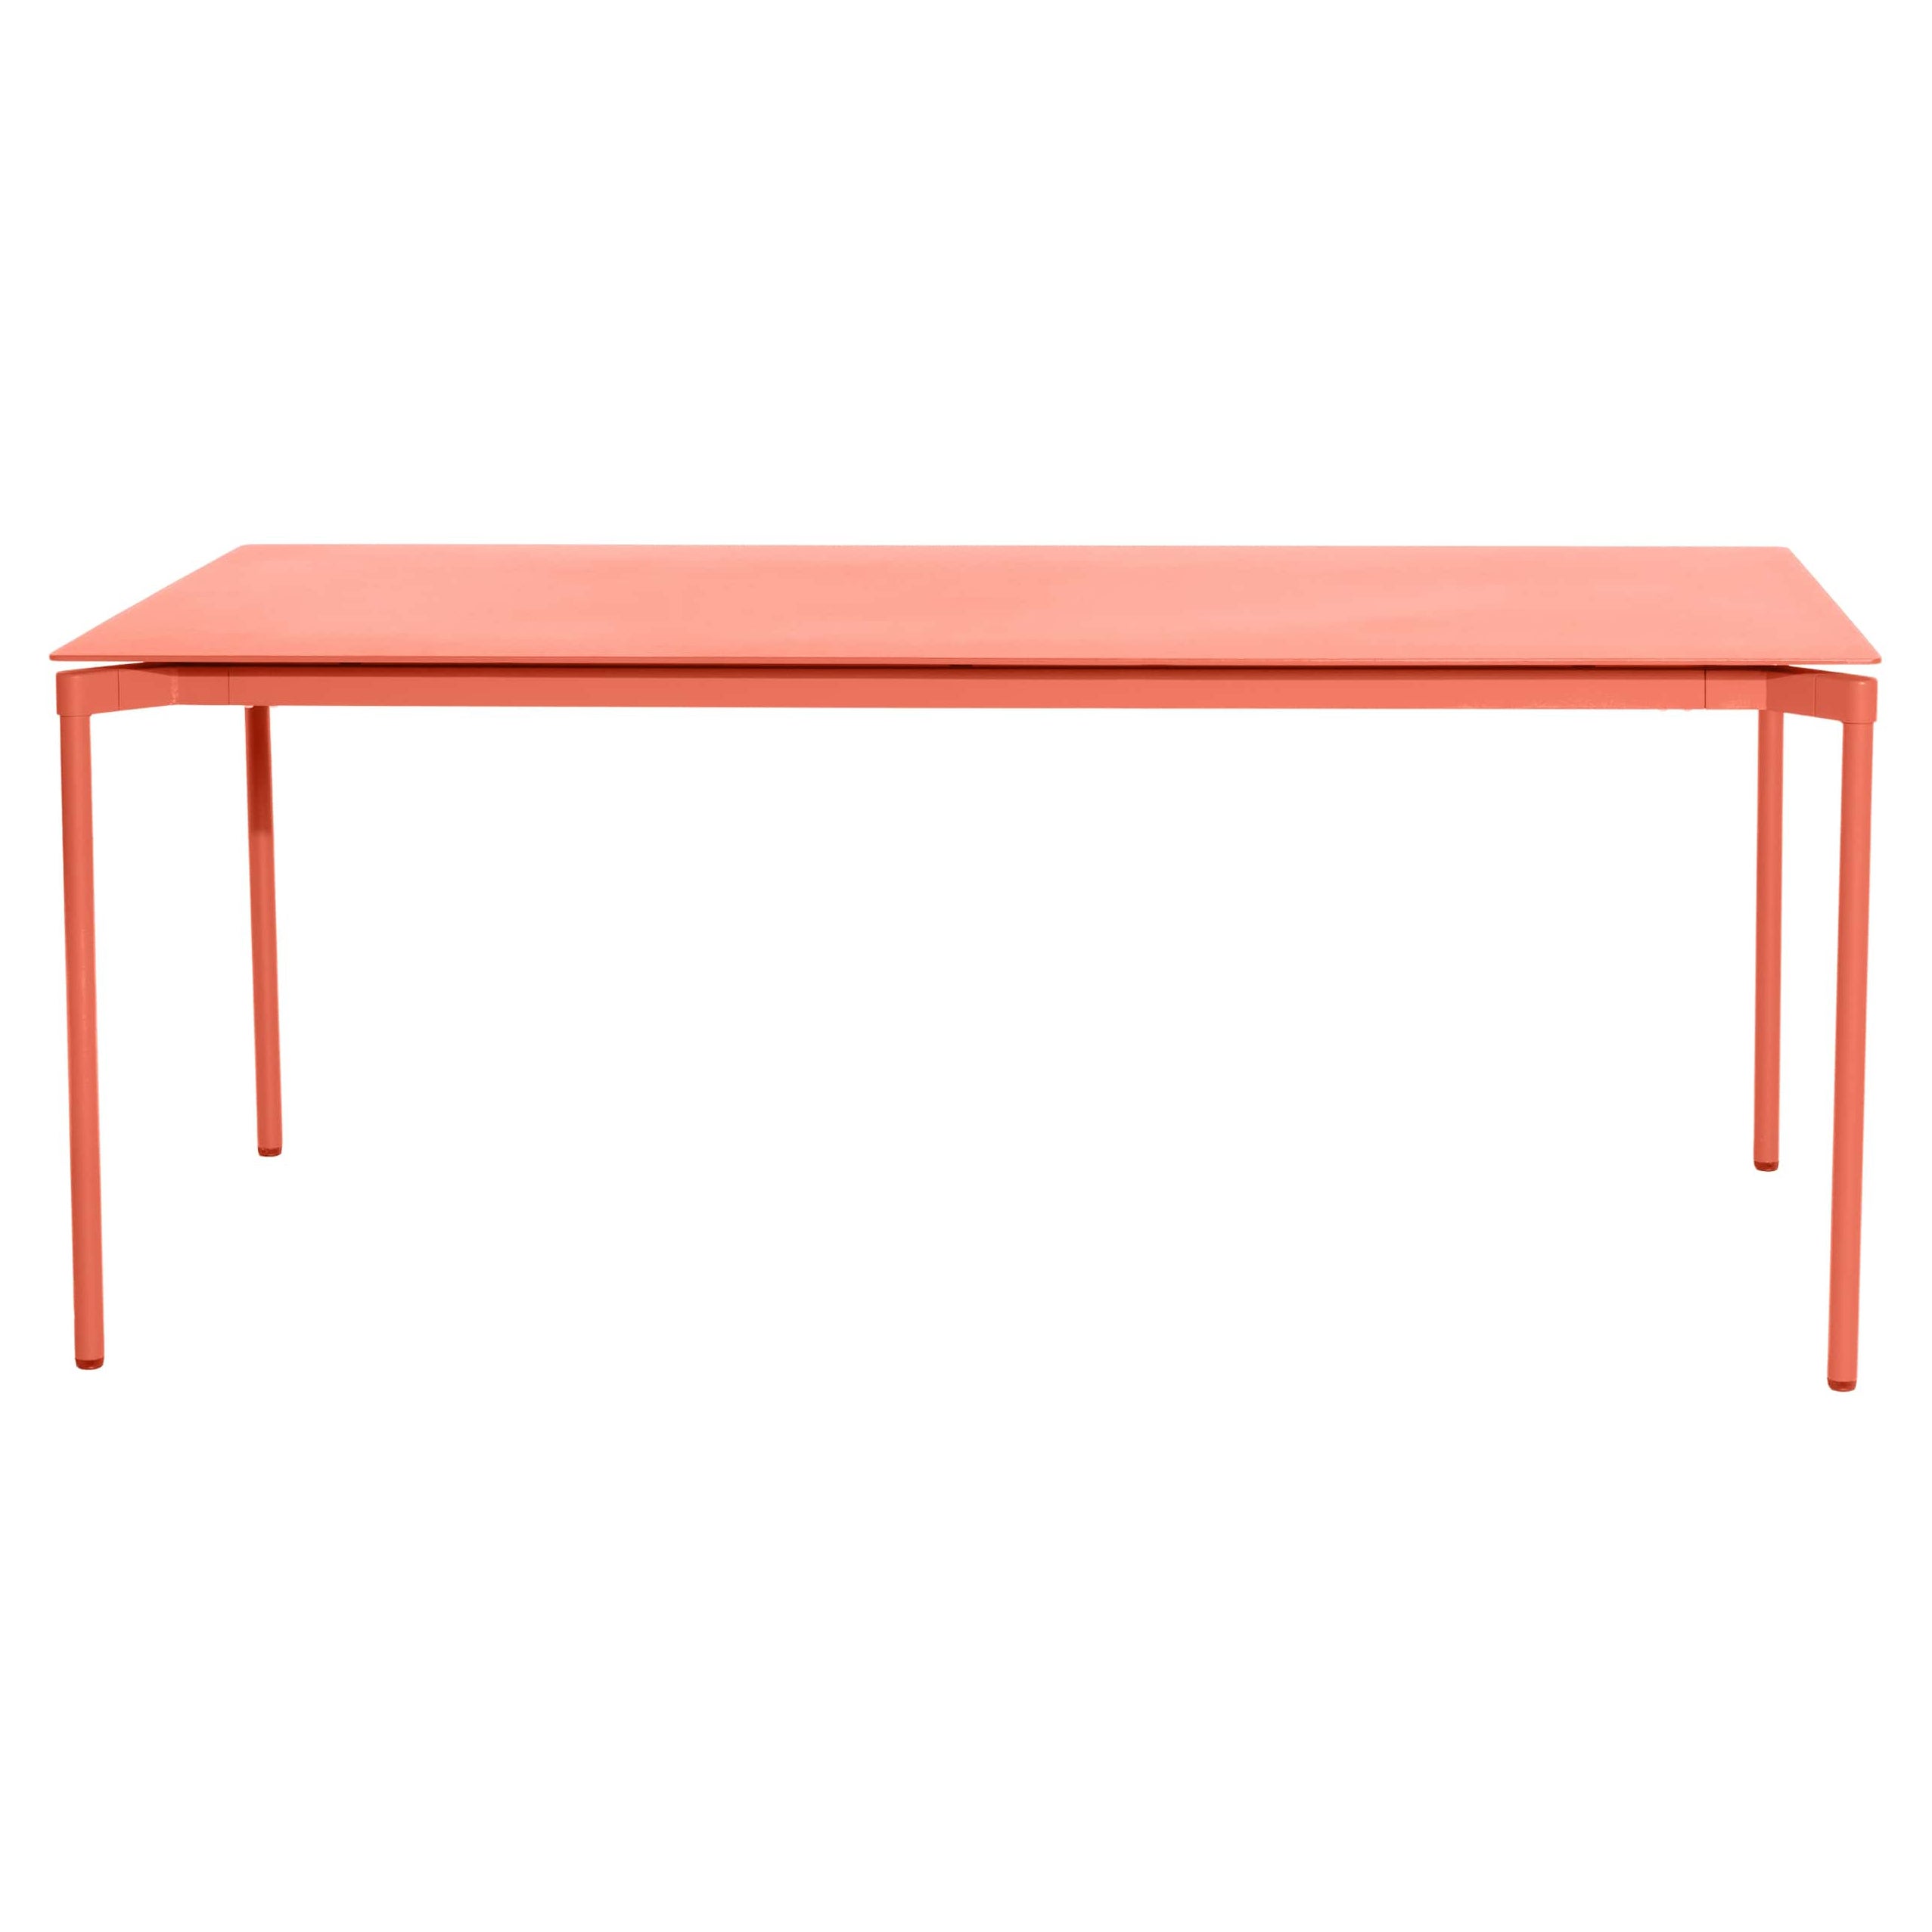 Petite table rectangulaire en aluminium corail de Tom Chung pour Friture Fromme